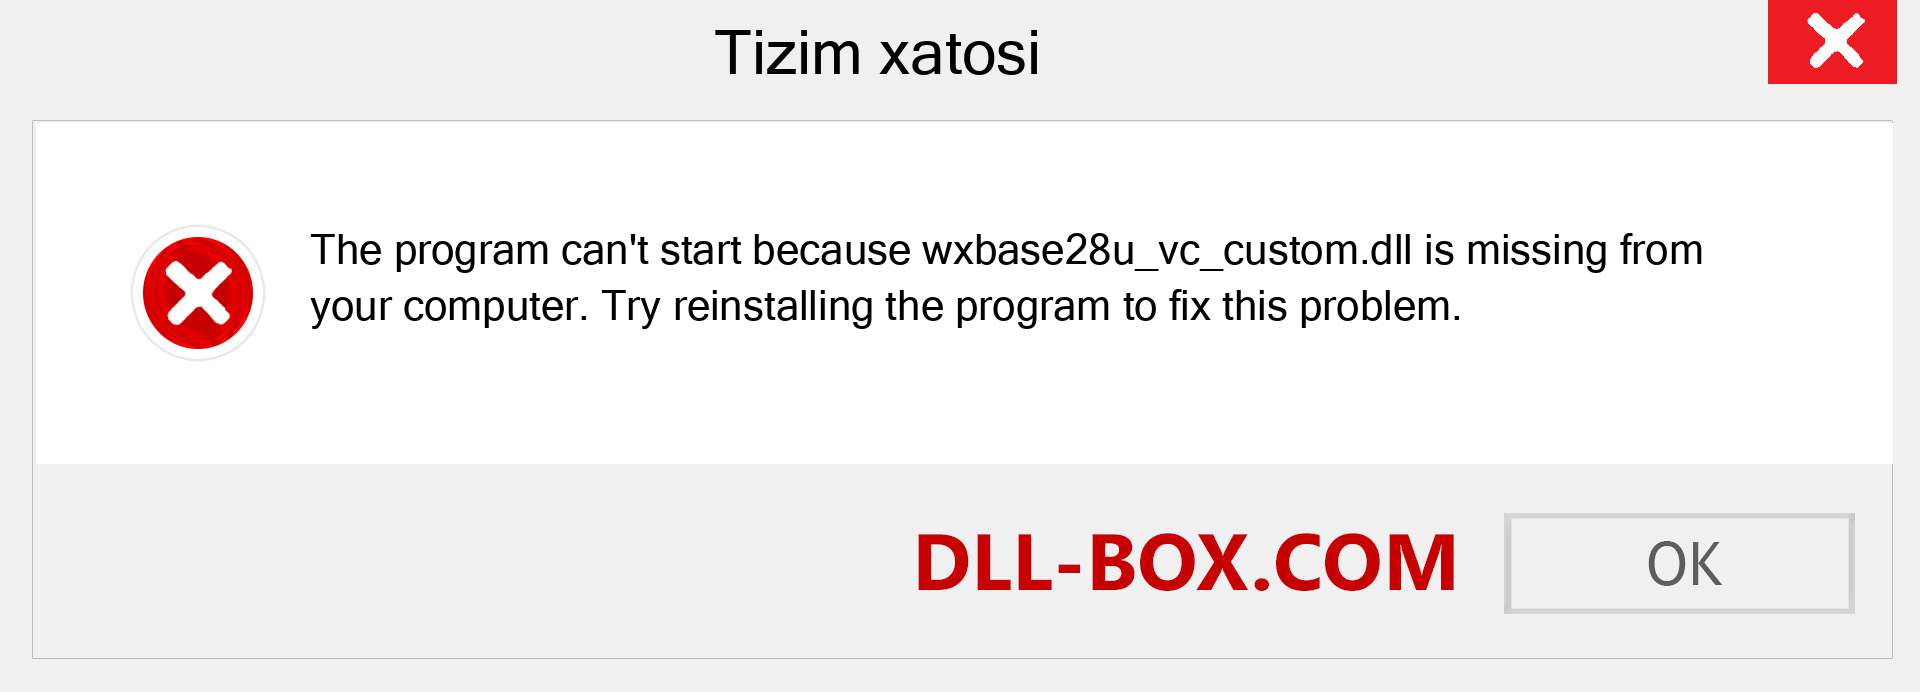 wxbase28u_vc_custom.dll fayli yo'qolganmi?. Windows 7, 8, 10 uchun yuklab olish - Windowsda wxbase28u_vc_custom dll etishmayotgan xatoni tuzating, rasmlar, rasmlar